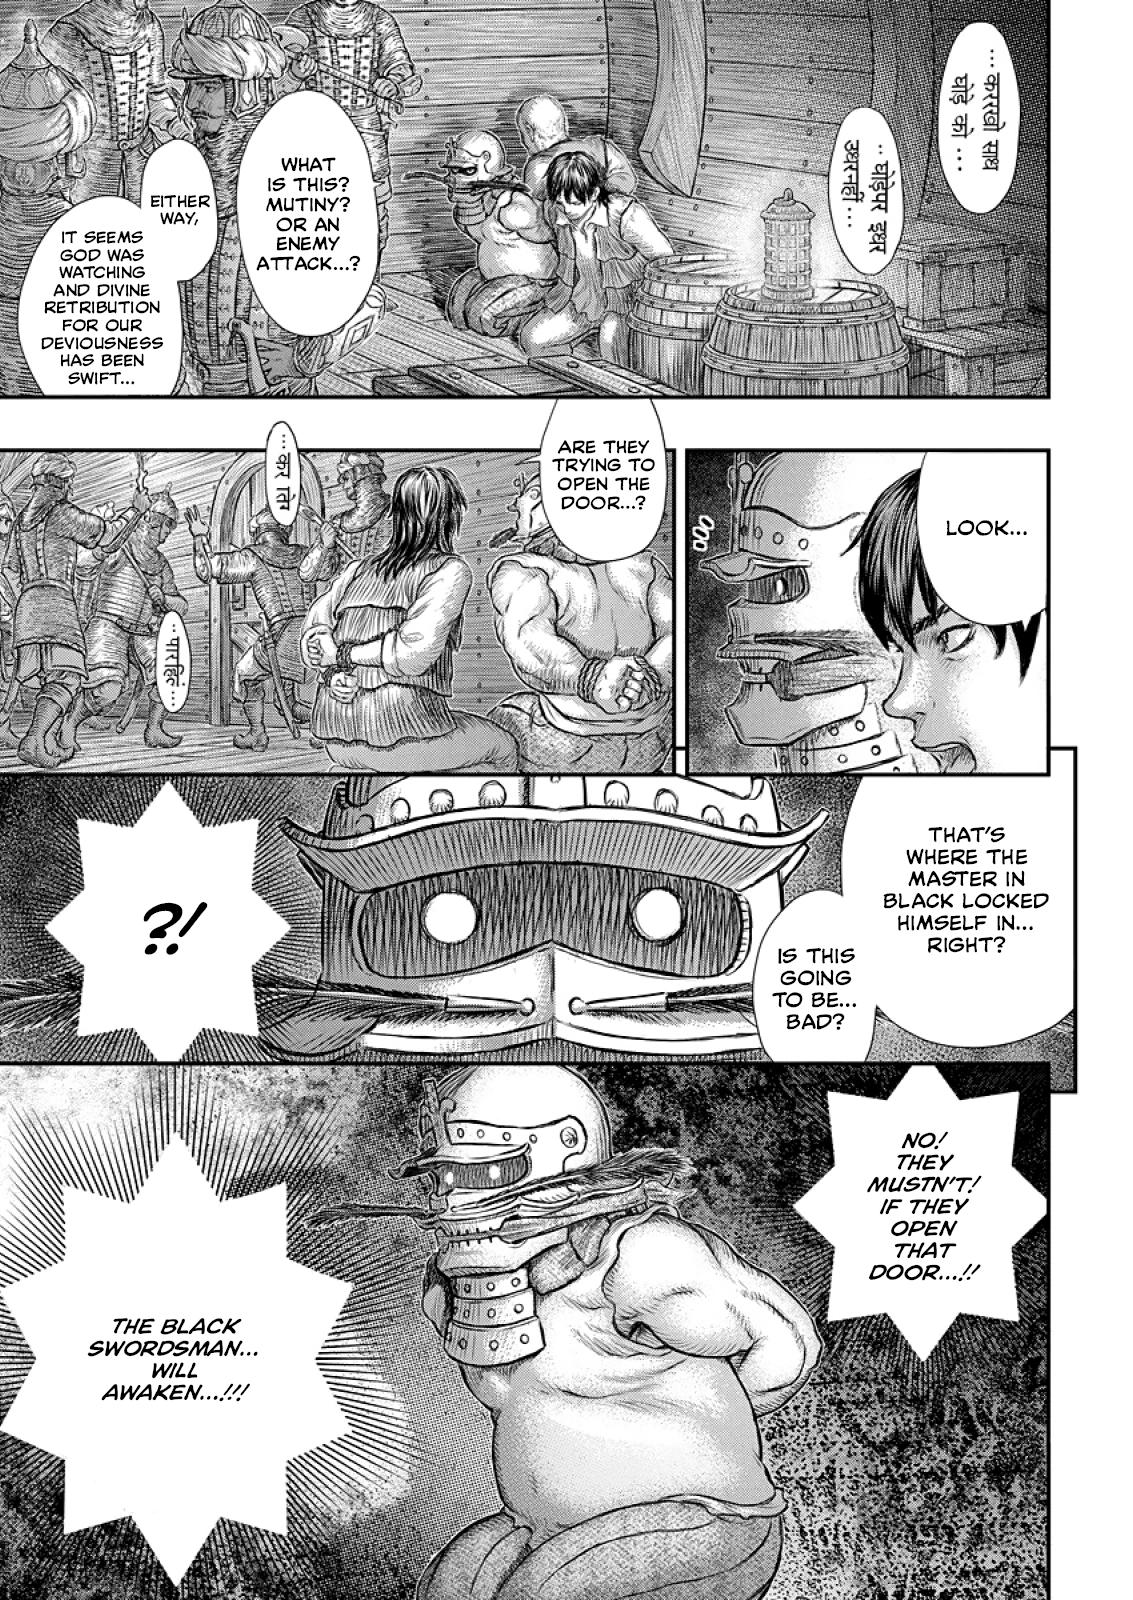 Berserk Manga Chapter 374 image 12